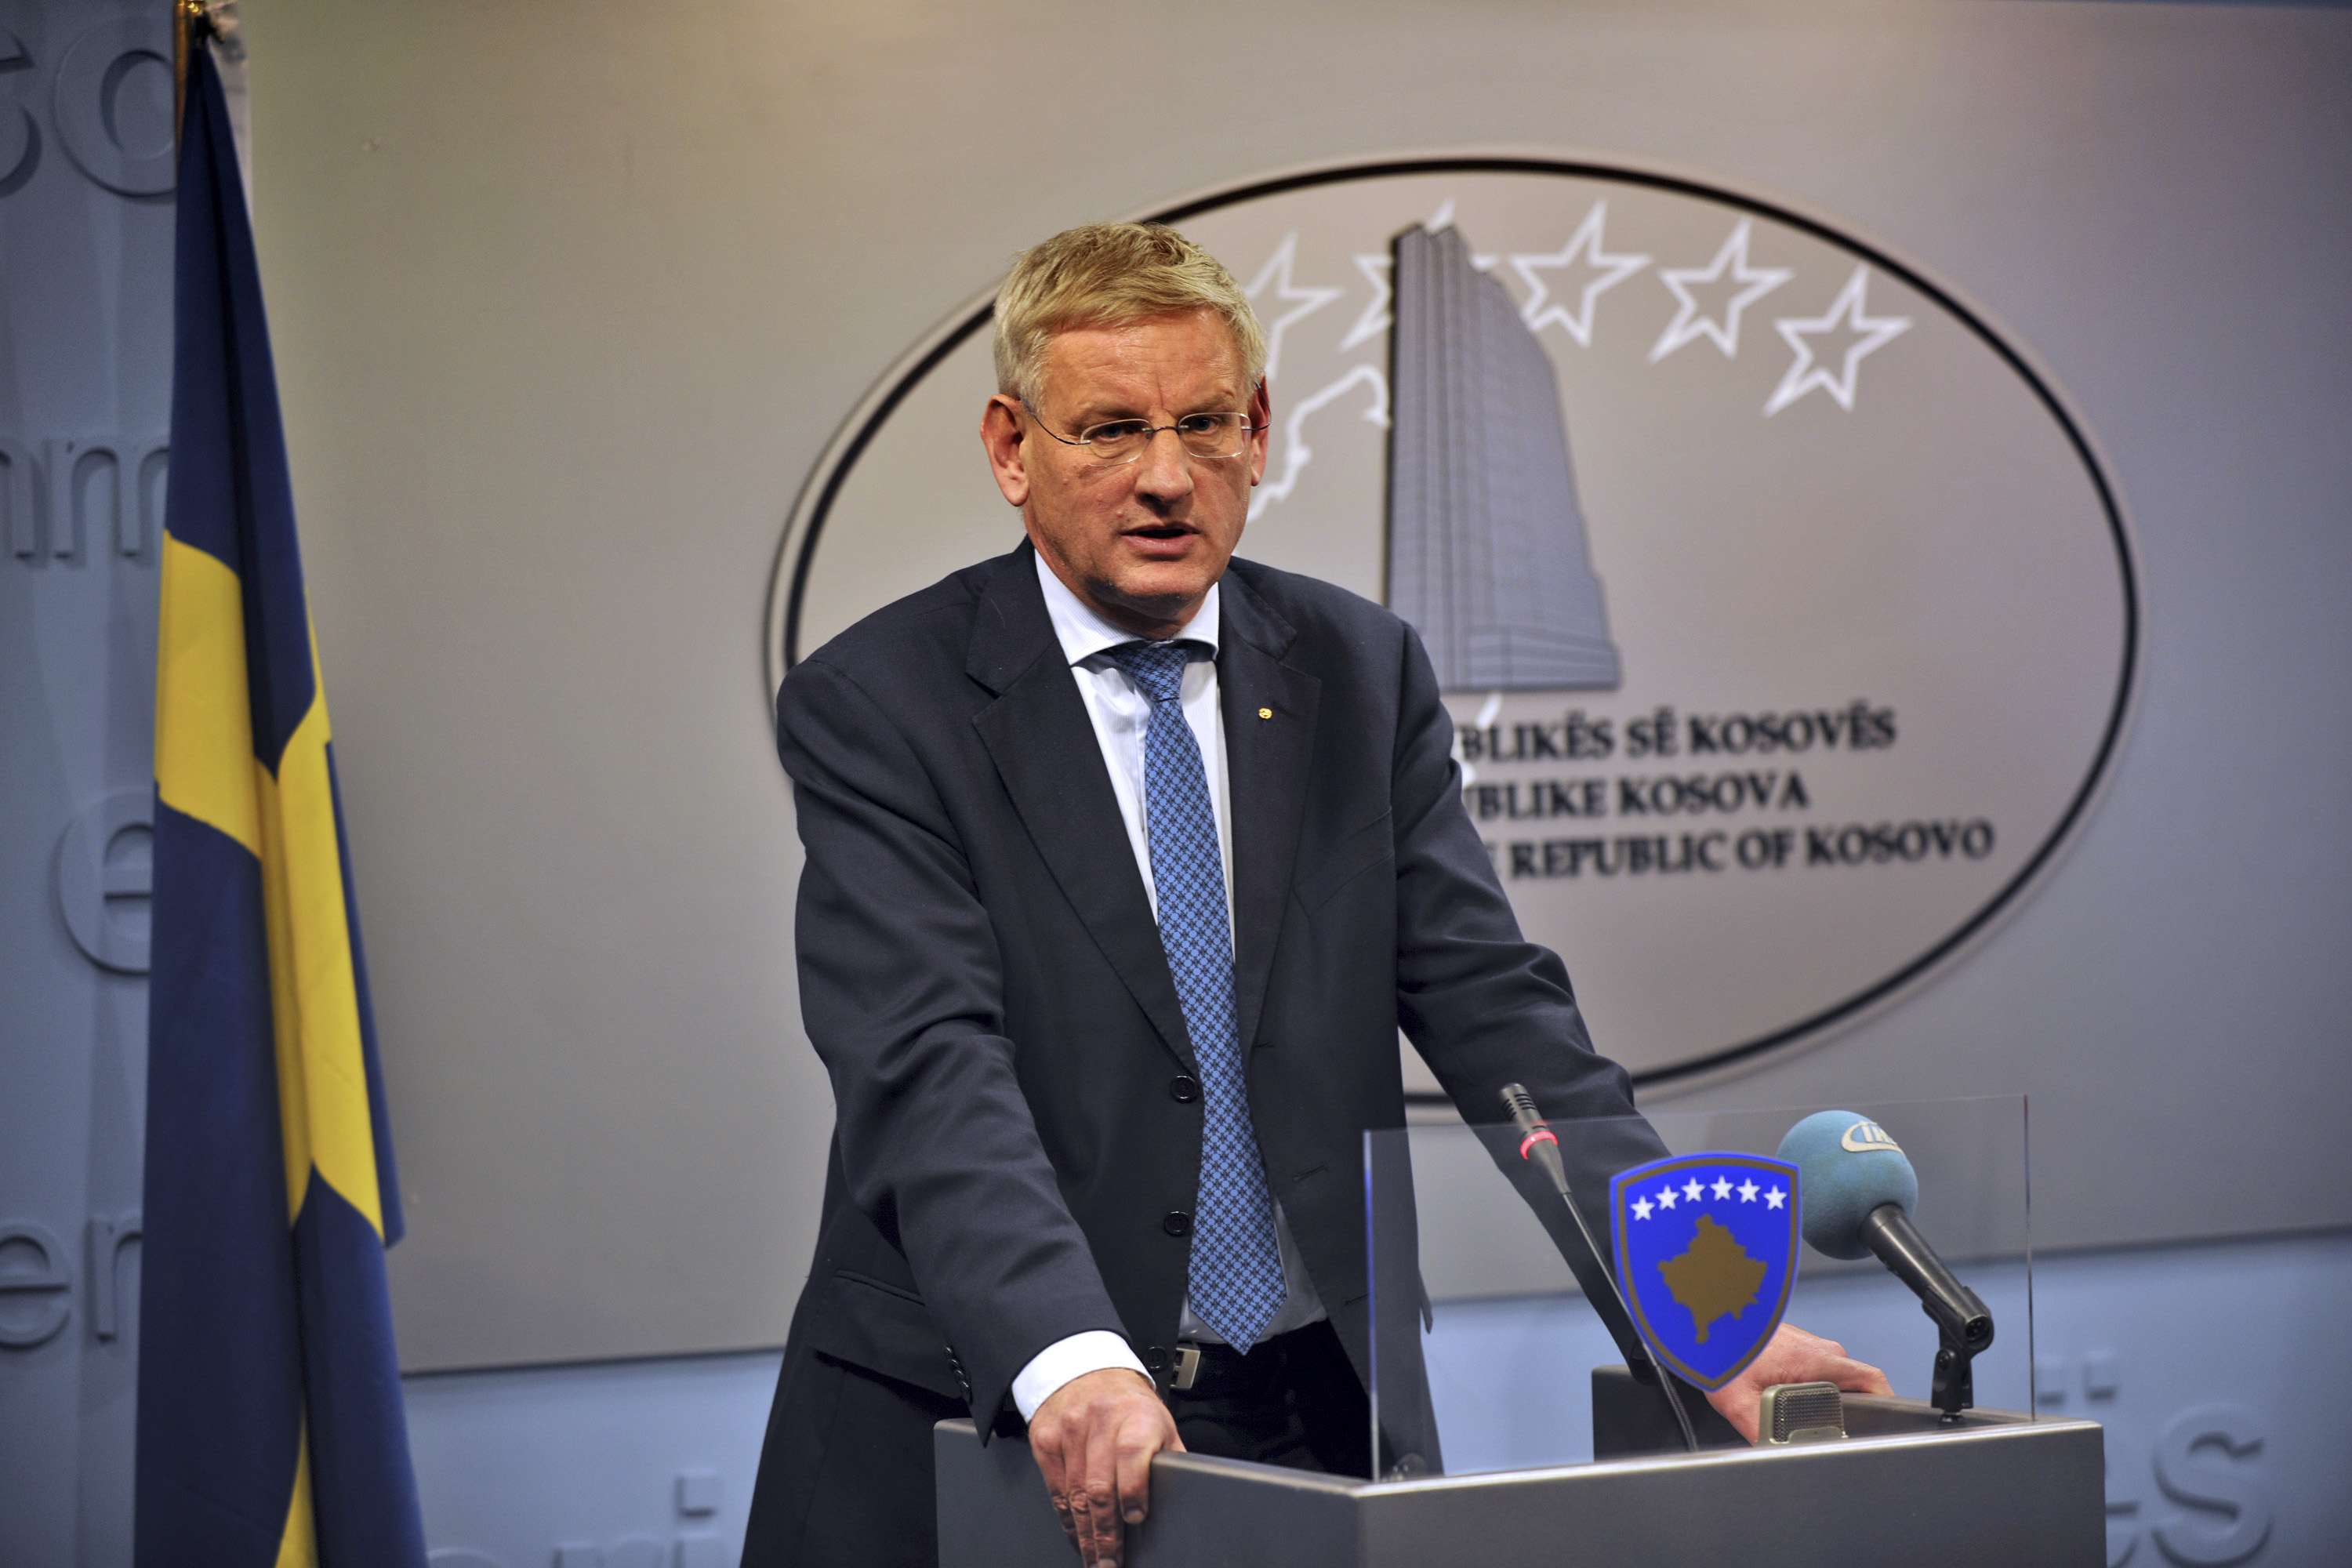 Utrikesminister Carl Bildt ska försöka sig på "fotbollsdiplomati" enligt Reuters.